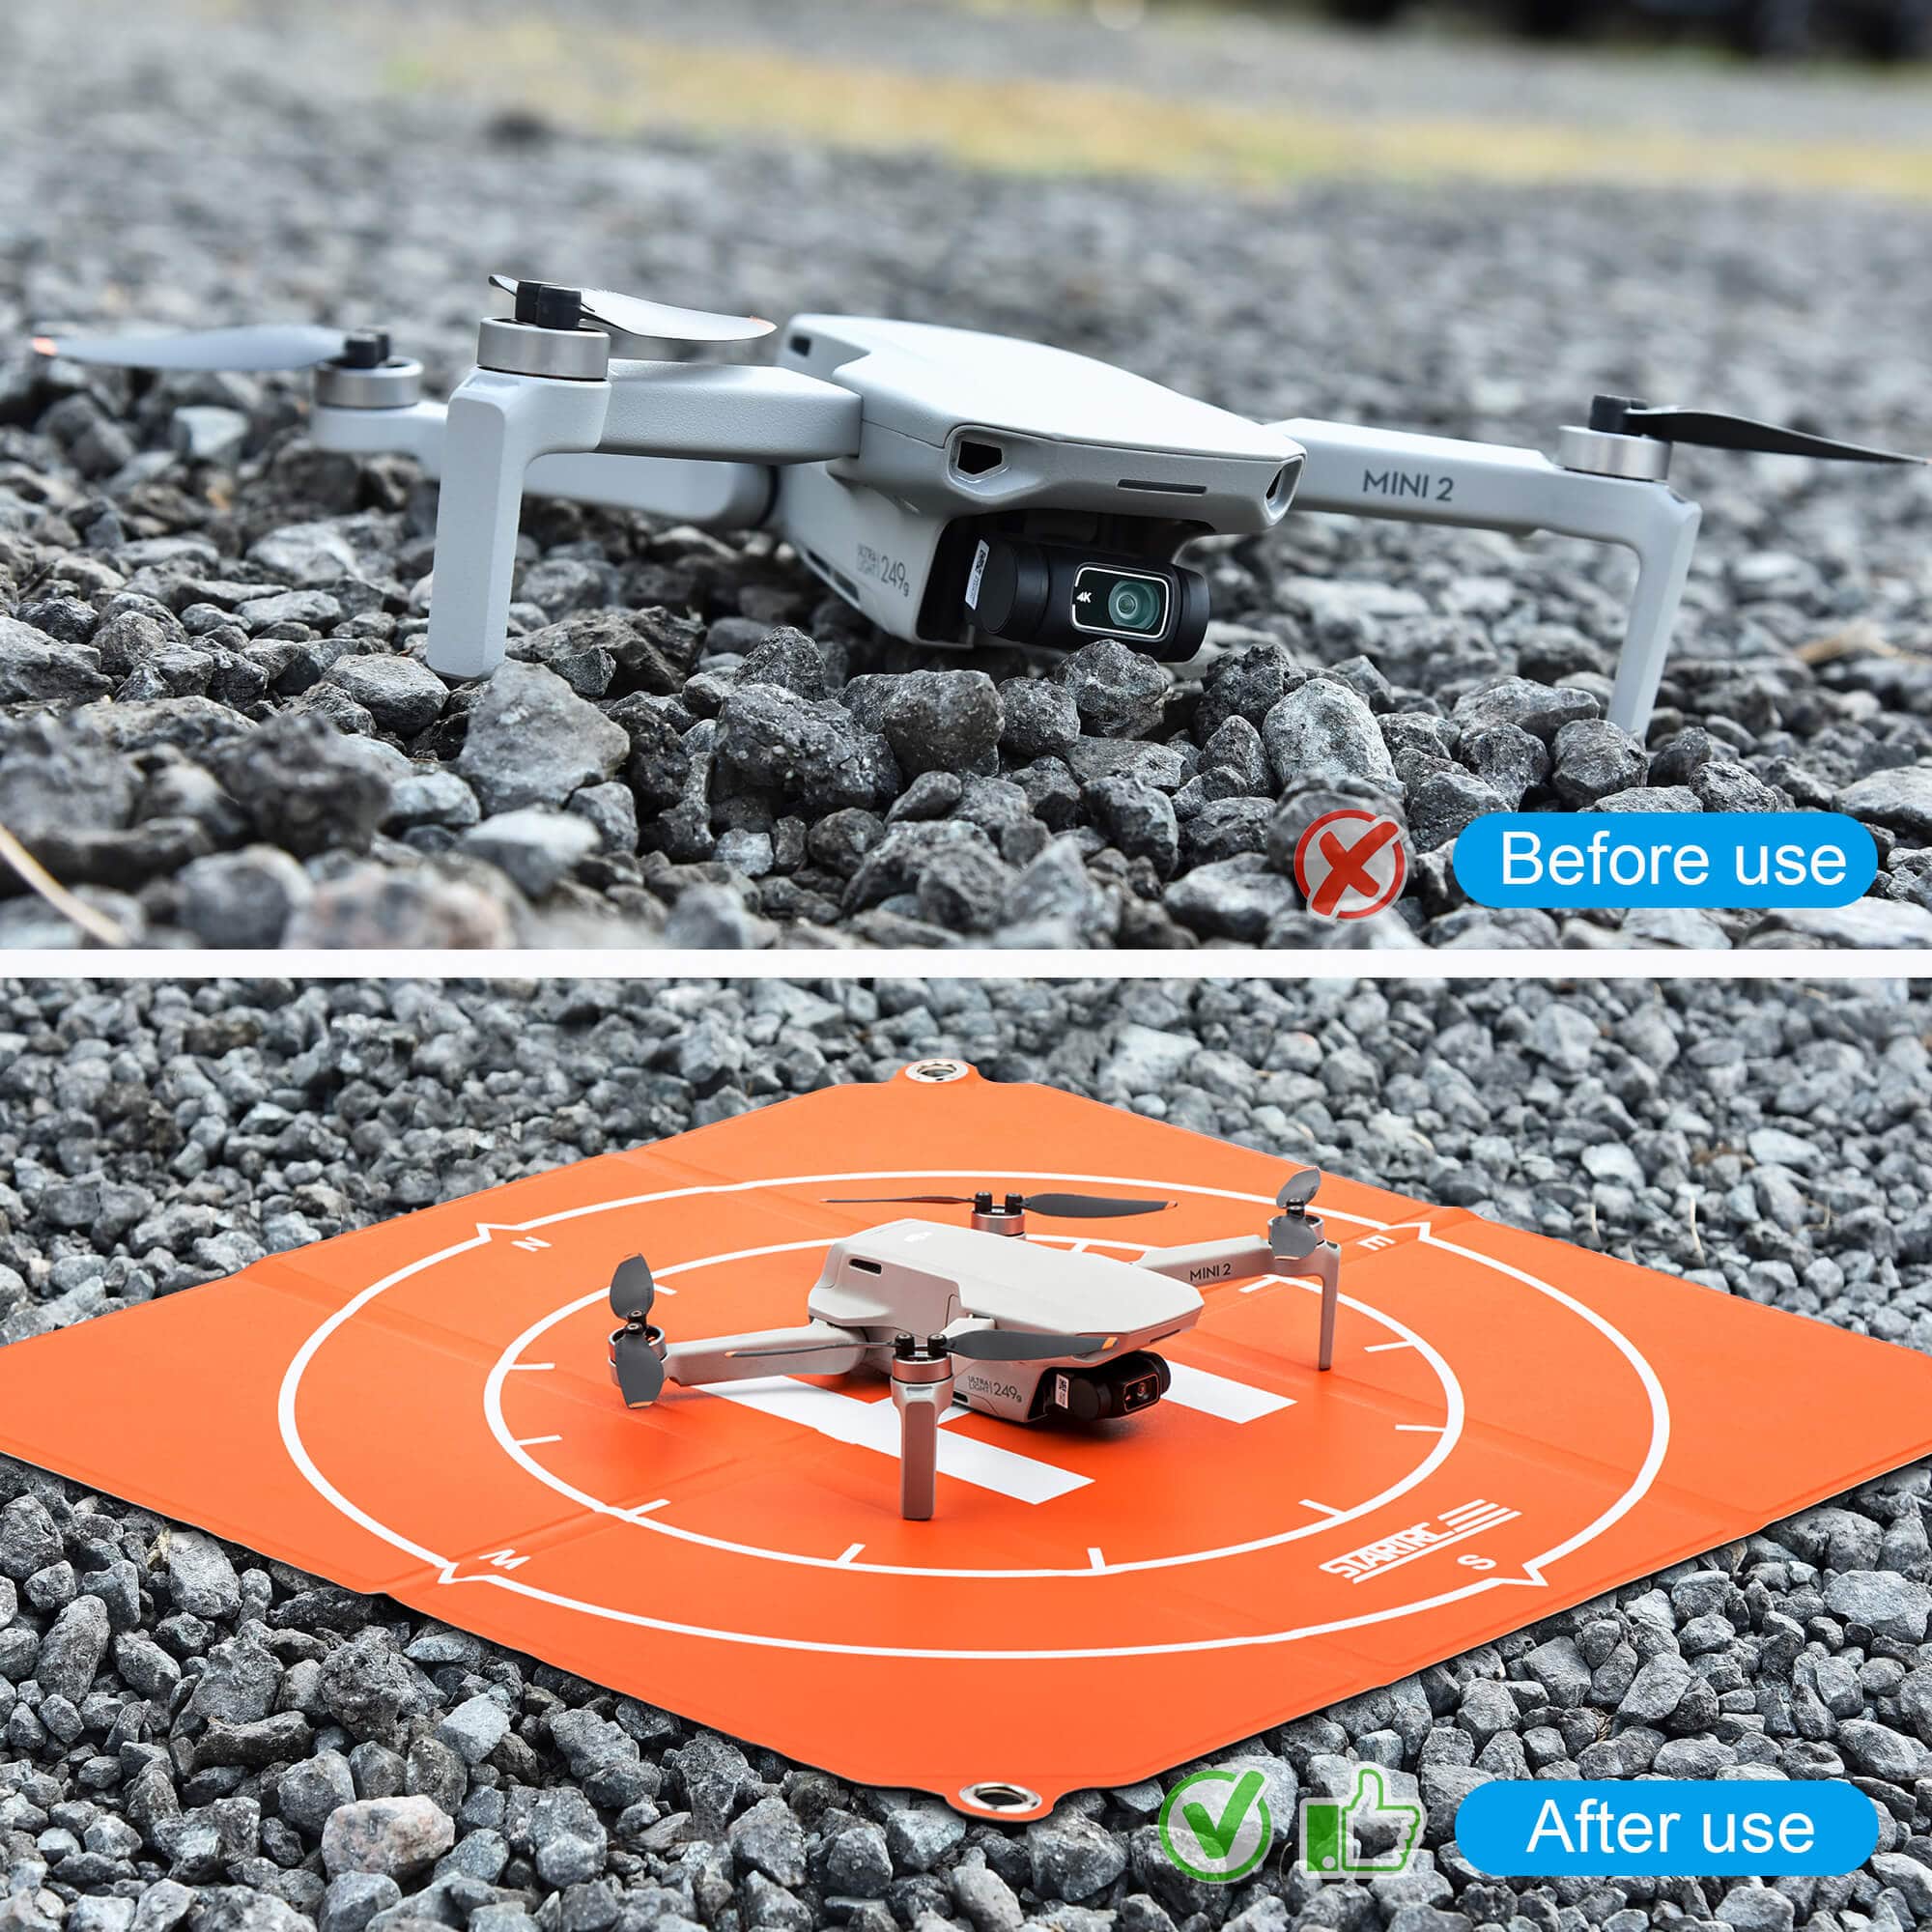 STARTRC Drohnen Landeplatz (65cm)